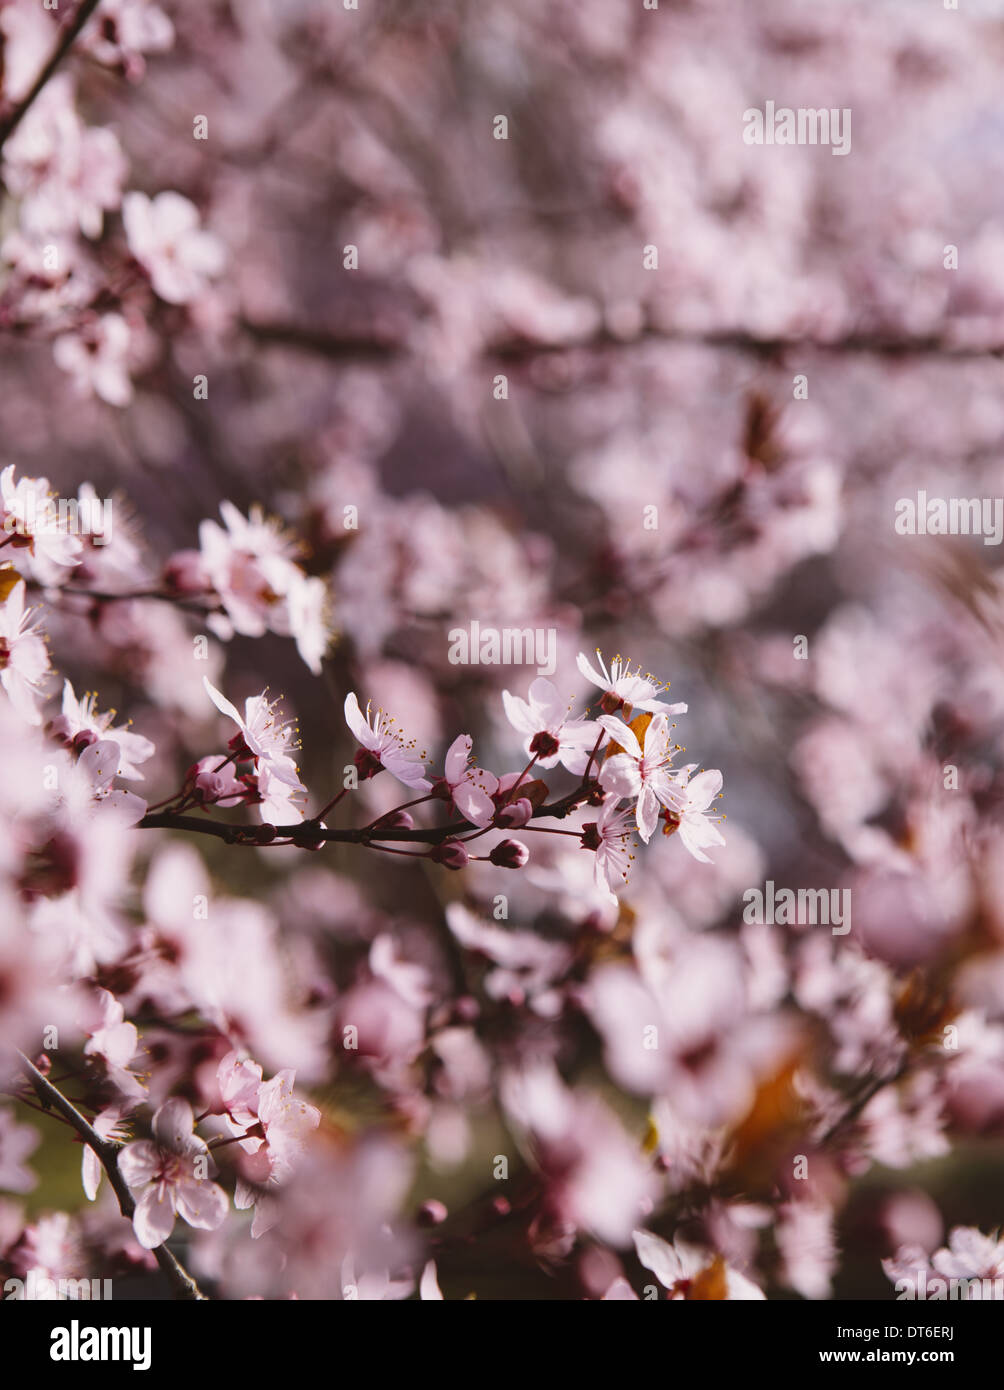 Ornamentale Pflaumenbaum blühen. Rosa Blüten an den Zweigen. Frühling in Seattle Stockfoto